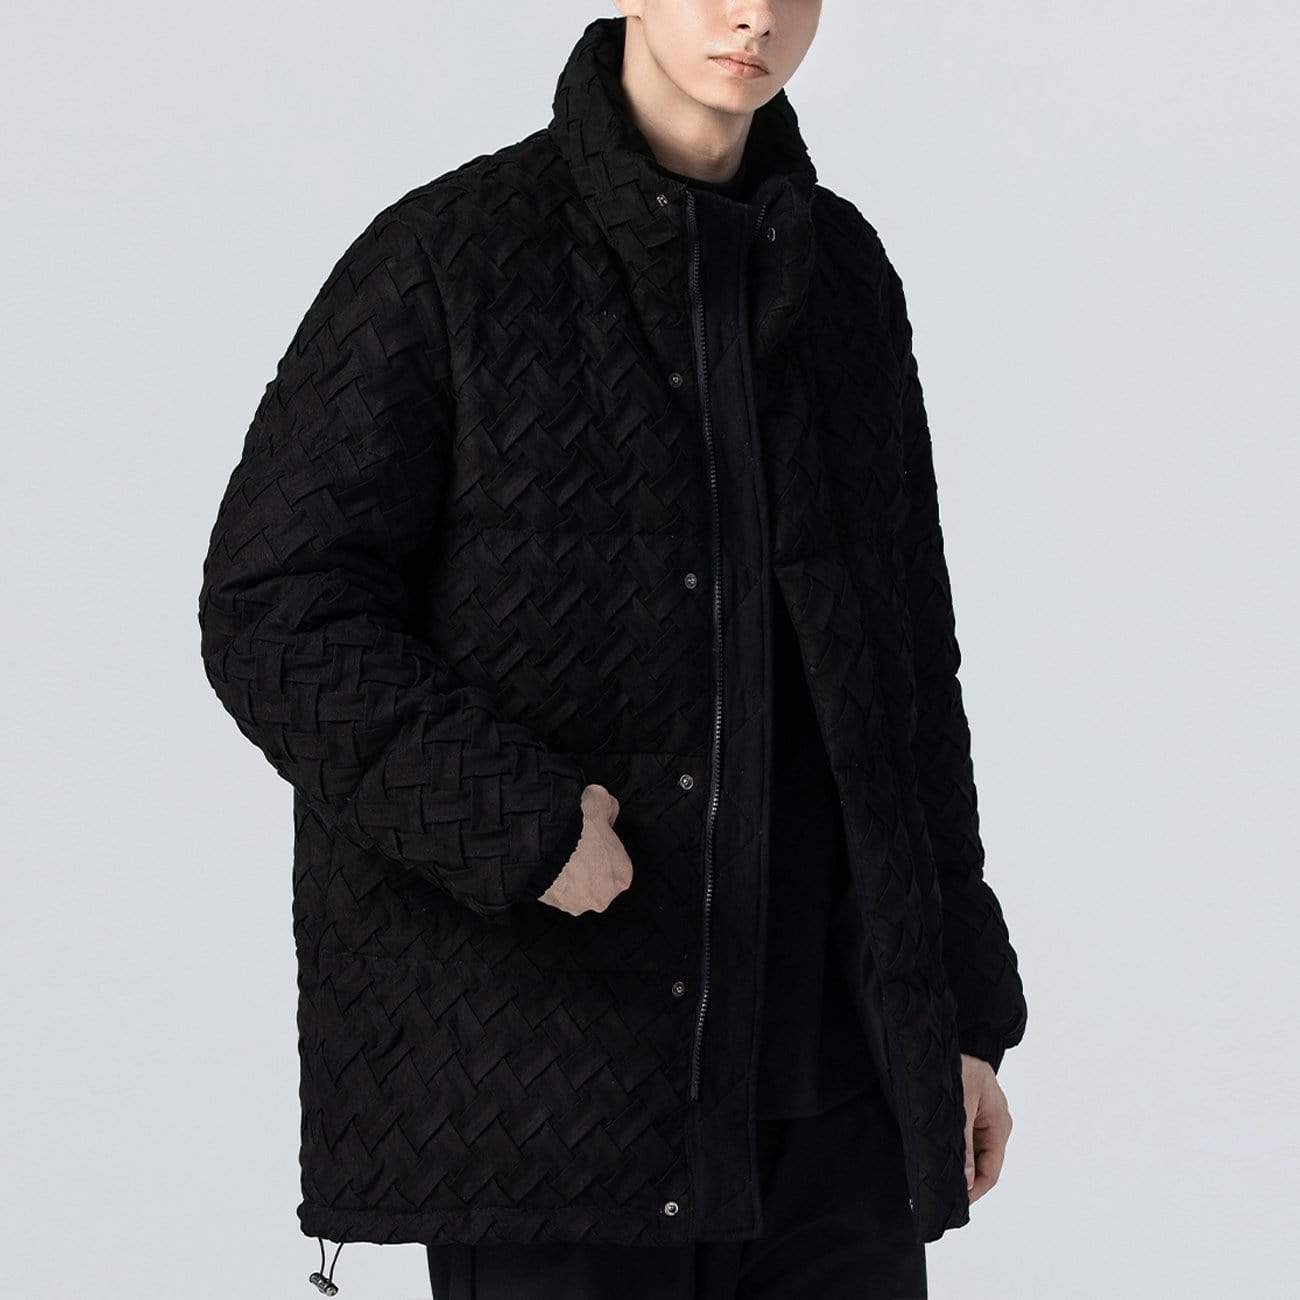 WLS Weave Pattern Winter Coat